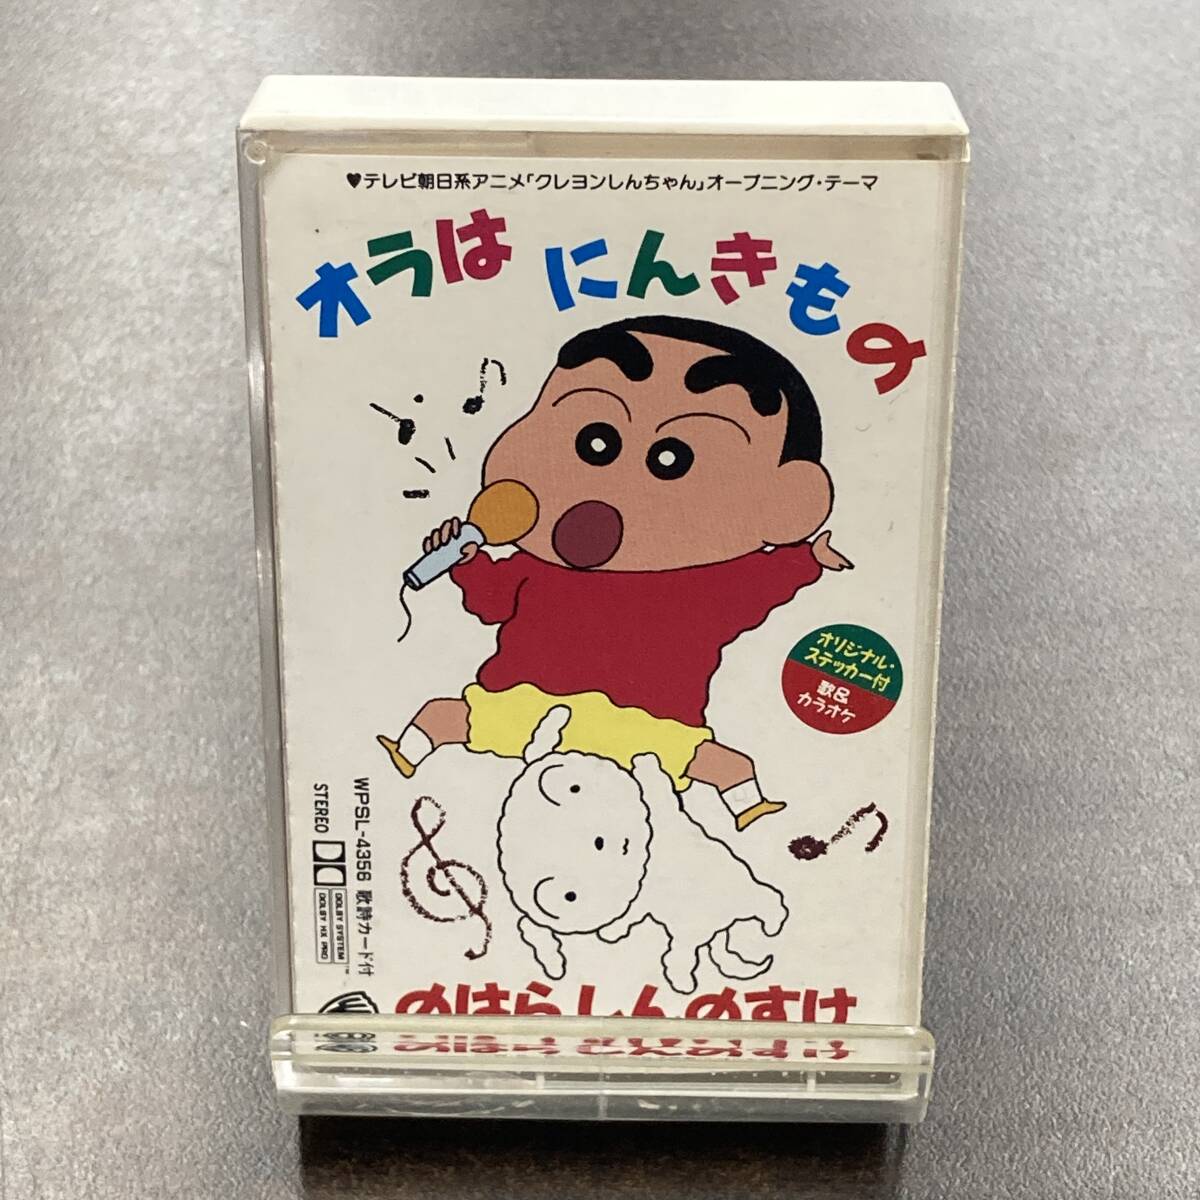 1478M クレヨンしんちゃん オラはにんきもの カセットテープ / Crayon Shin-chan Anime Cassette Tape_画像1